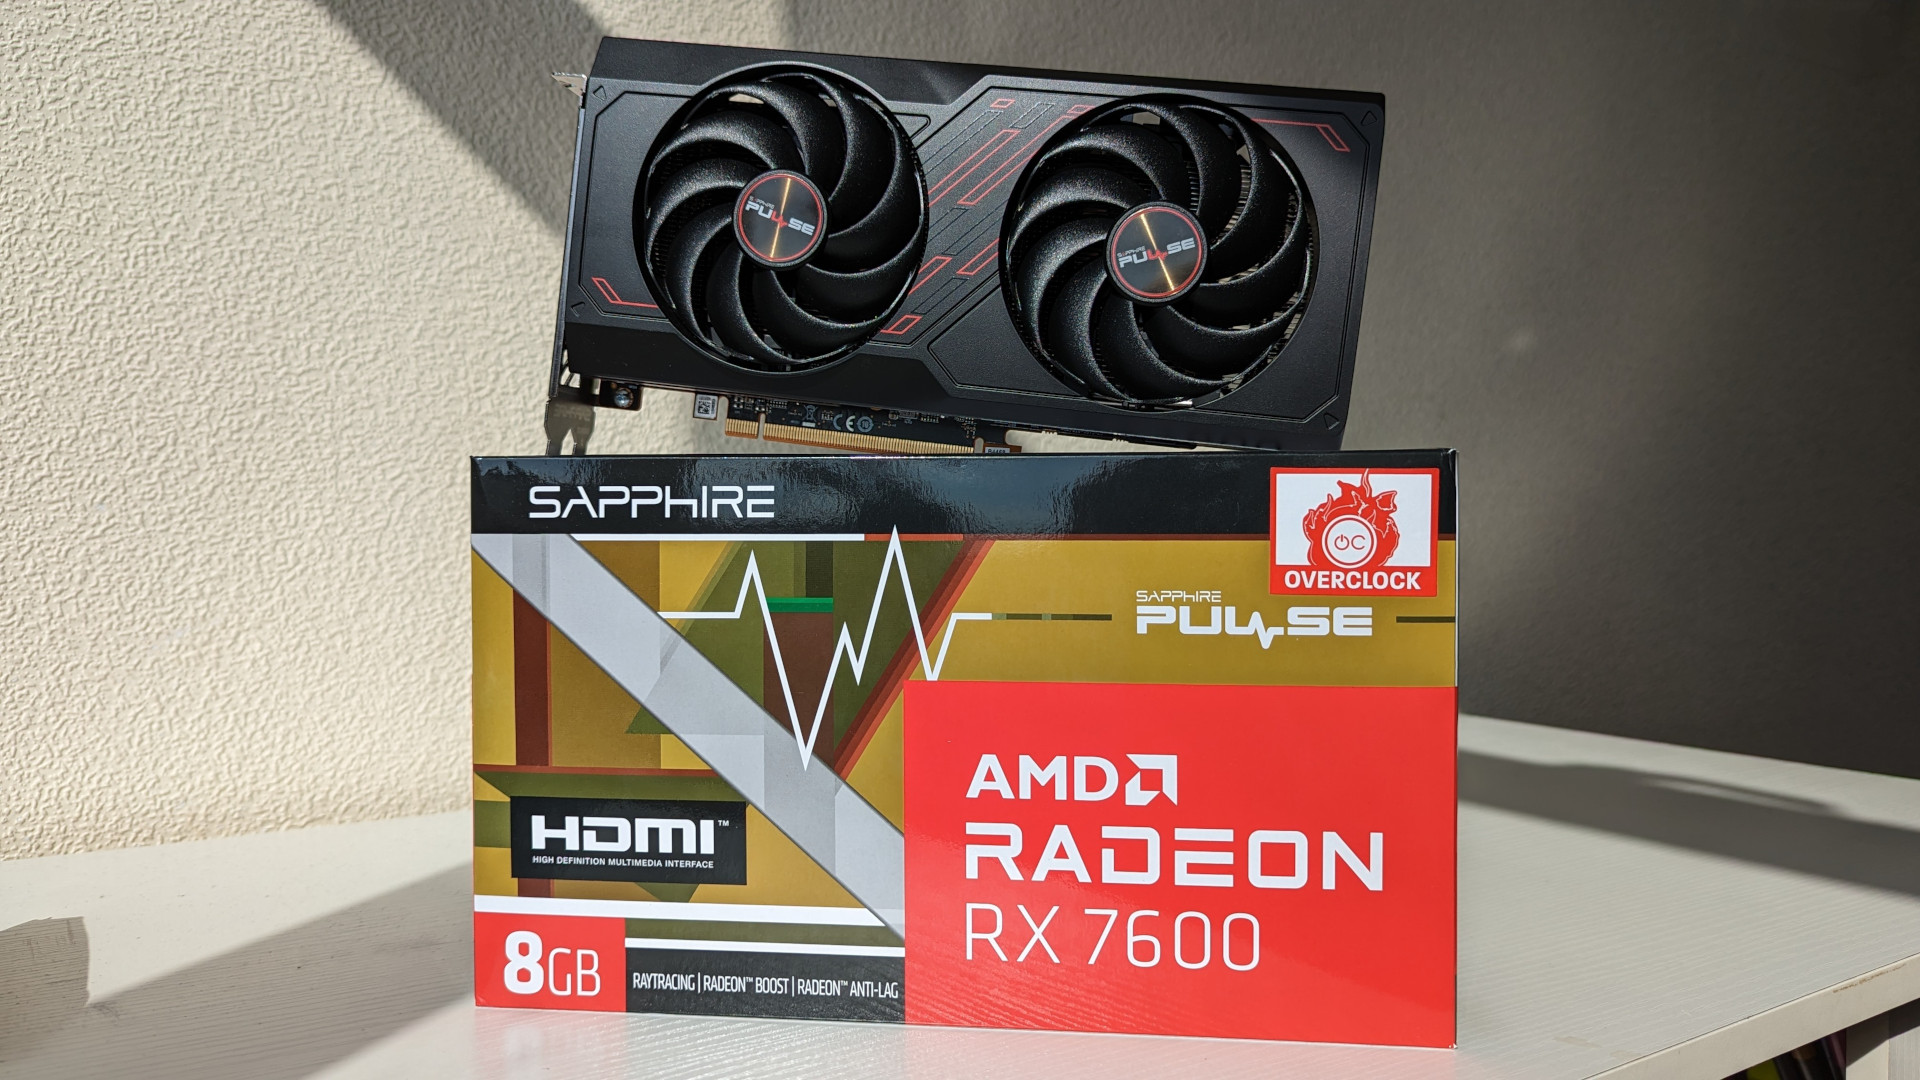 Examen AMD Radeon RX 7600 : la carte graphique se trouve au sommet de son emballage de vente au détail